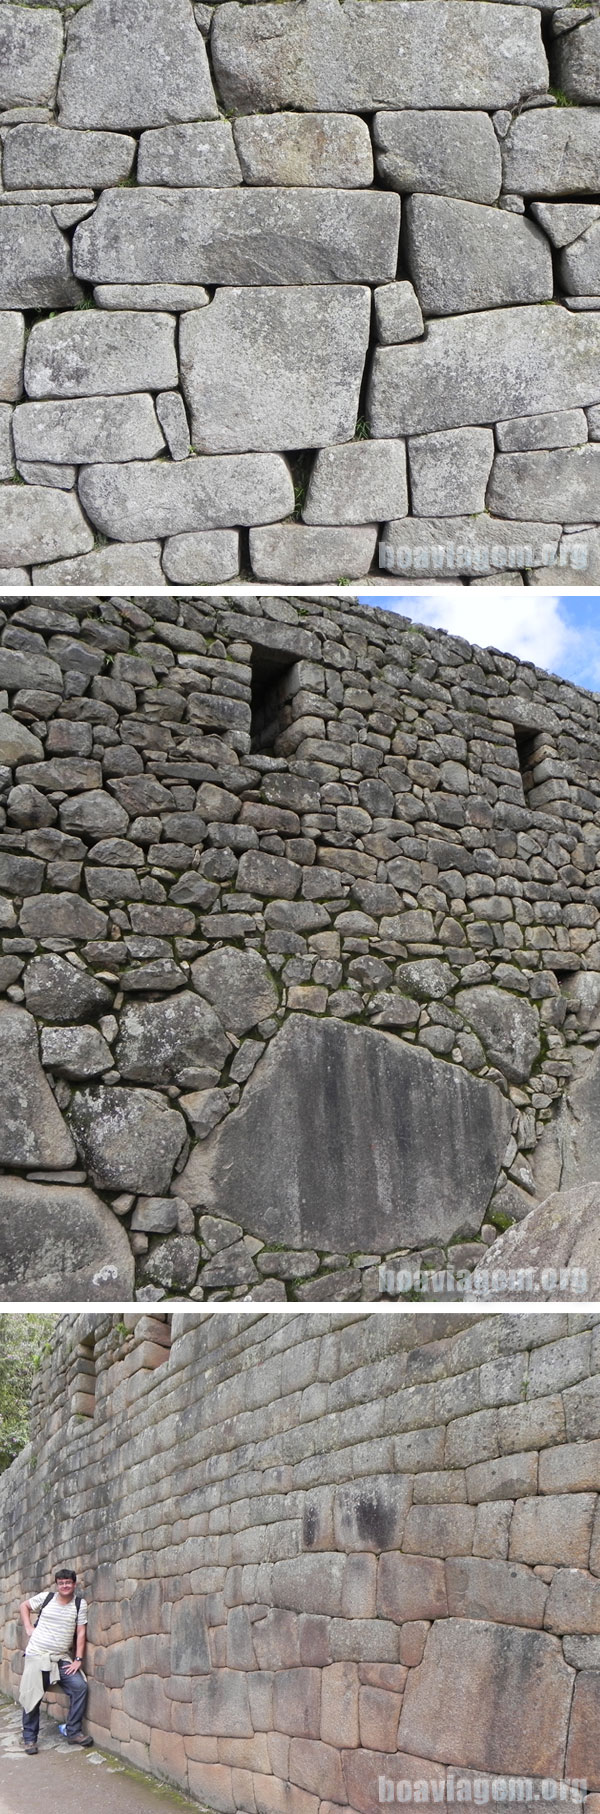 Paredes de Machu Picchu